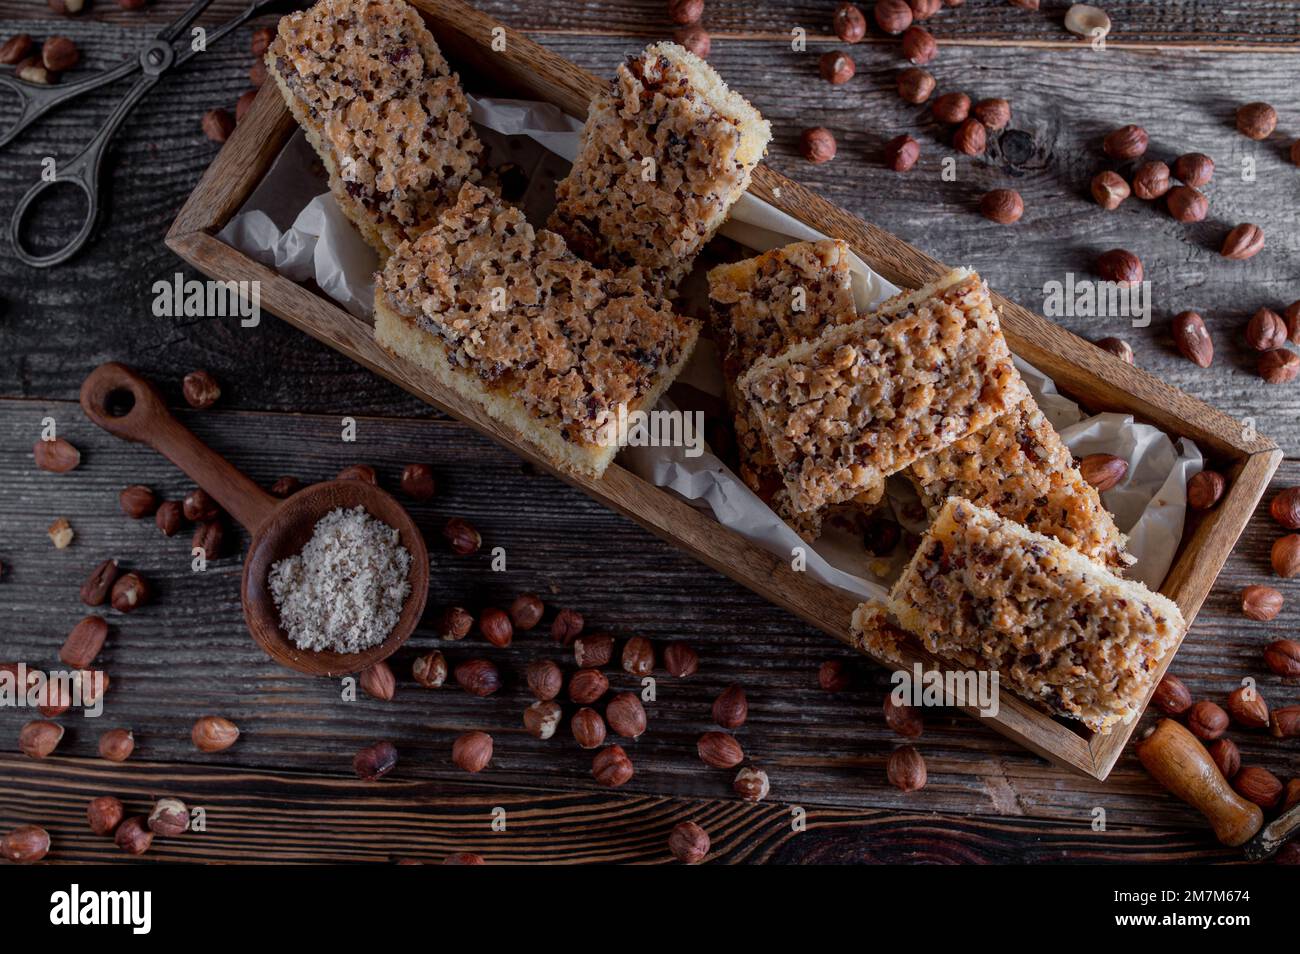 Nut cake with caramelized hazelnuts on wooden background. Flat lay Stock Photo